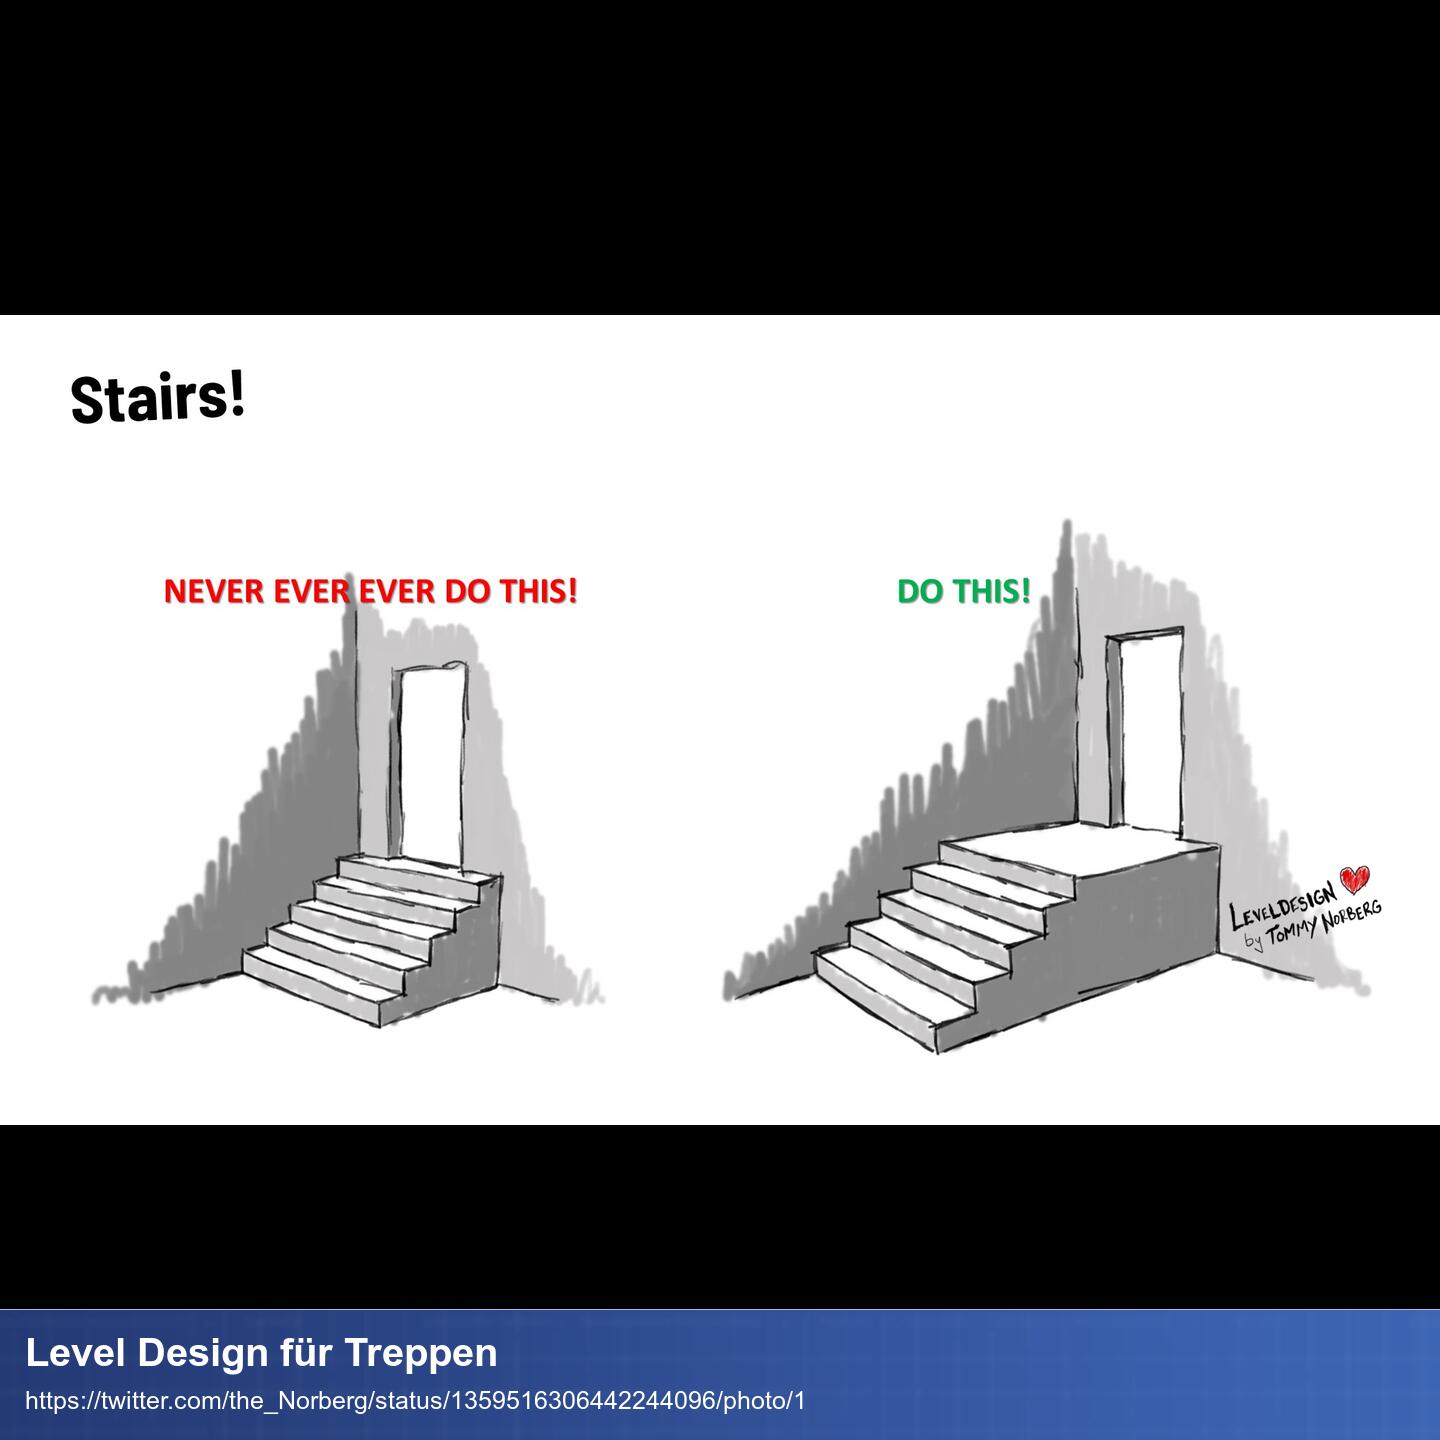 Skizze wie man Leveldesign bei Treppen machen sollte. Die Treppenstufen sollten nicht direkt an der Tür enden sondern auf einem Podest enden welches dann zur Tür führt.